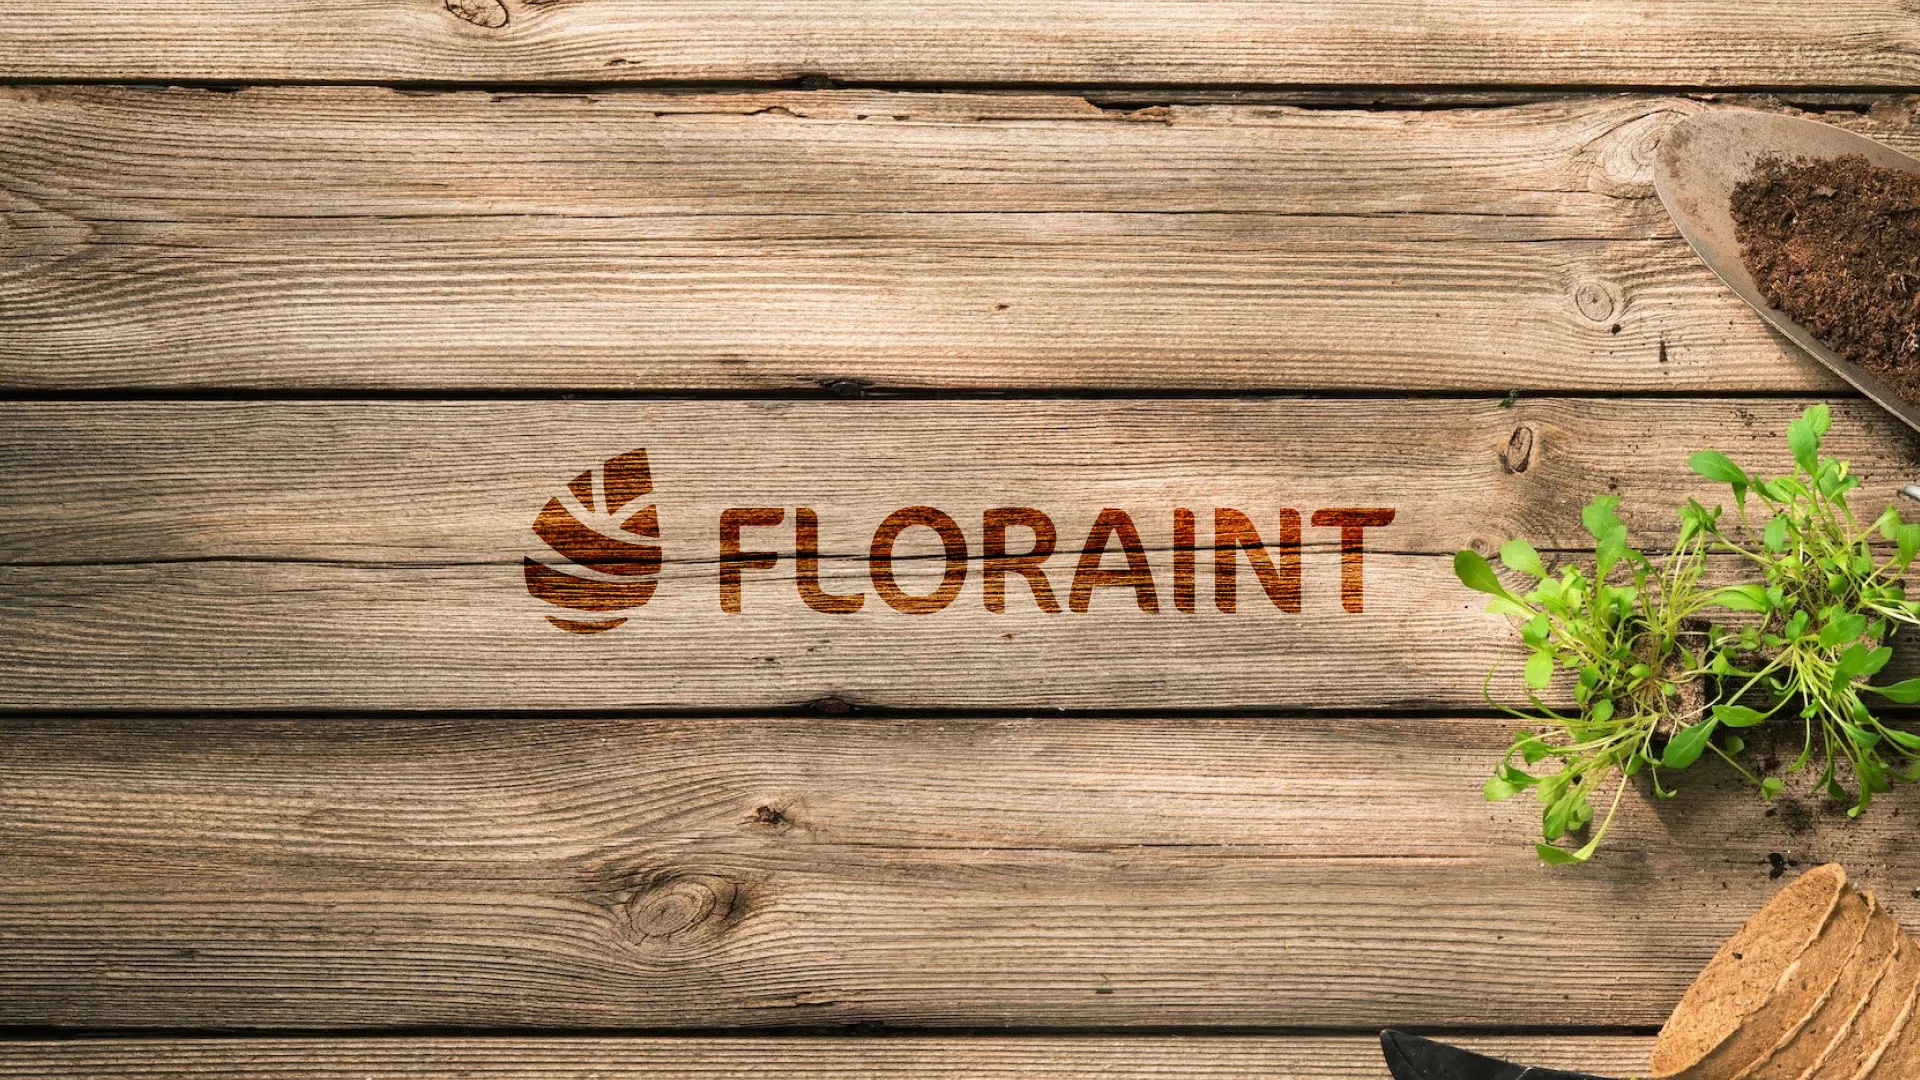 Создание логотипа и интернет-магазина «FLORAINT» в Таре